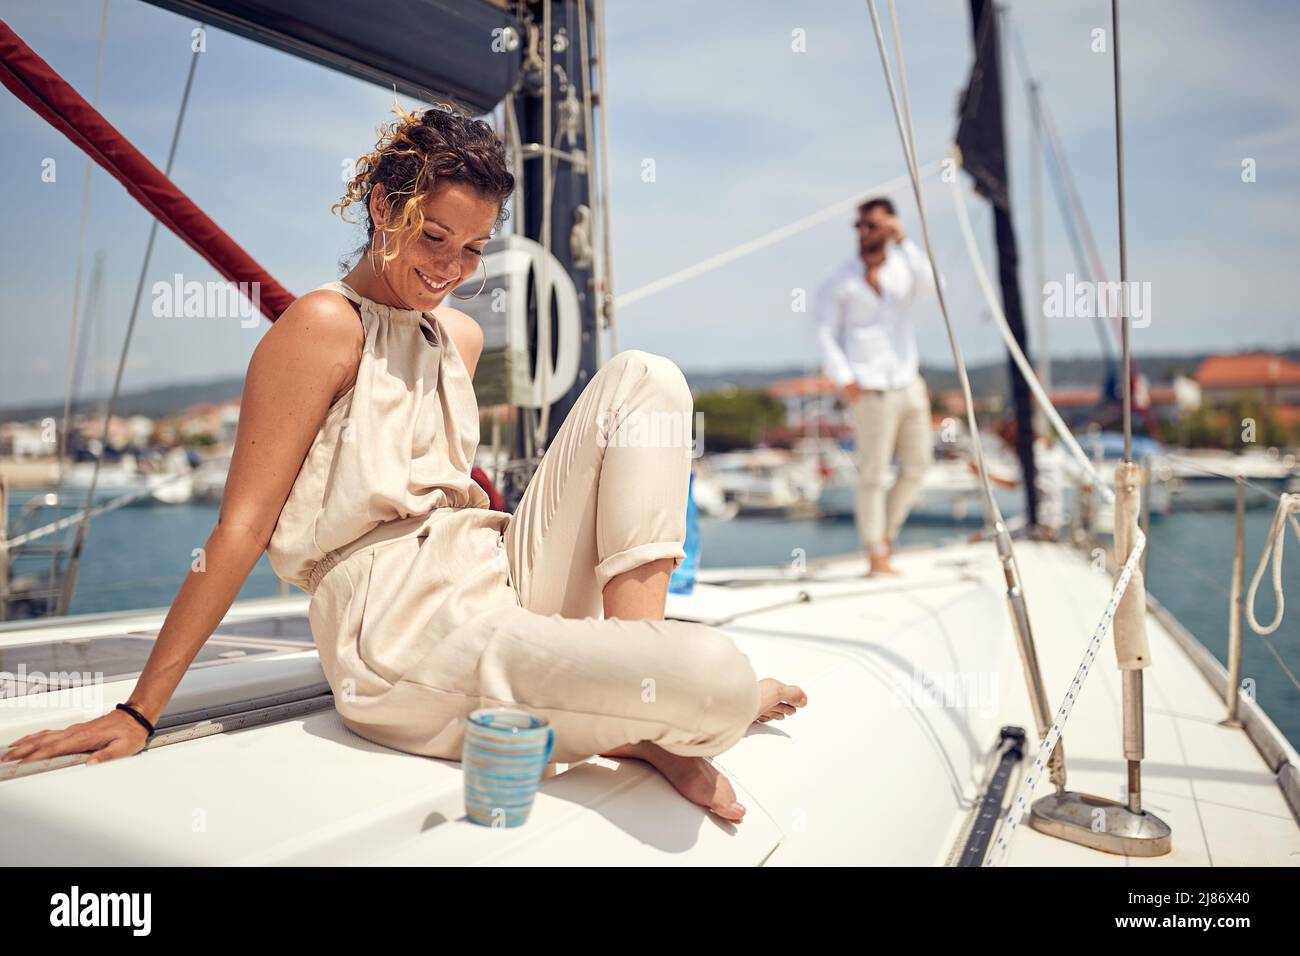 Una ragazza bella e giovane è seduta su uno yacht e godersi il sole in una bella giornata estiva. Estate, mare, vacanza, rapporto Foto Stock